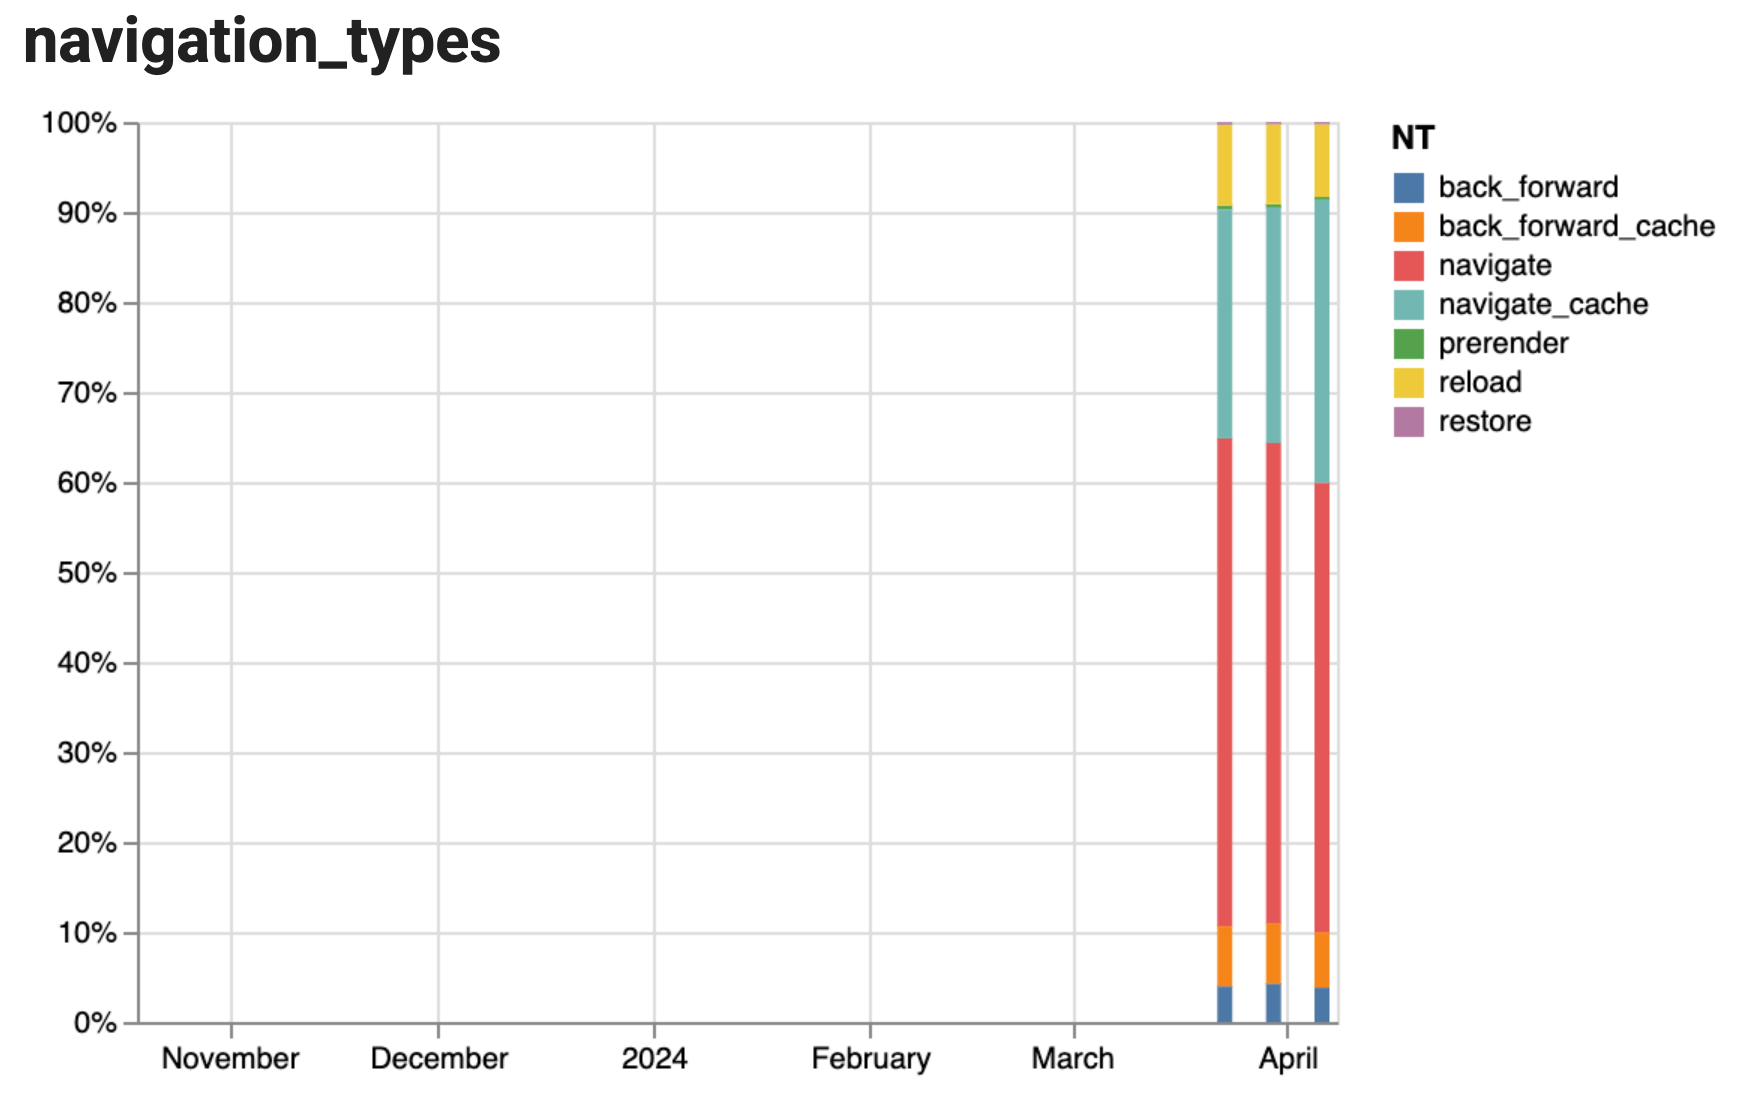 نمودار انباشته‌ای که تاریخچه انواع پیمایش را در طول 3 هفته نشان می‌دهد، با اکثریت پیمایش‌ها از نوع «ناوبری» و بدون تغییر عمده در طول سه هفته.